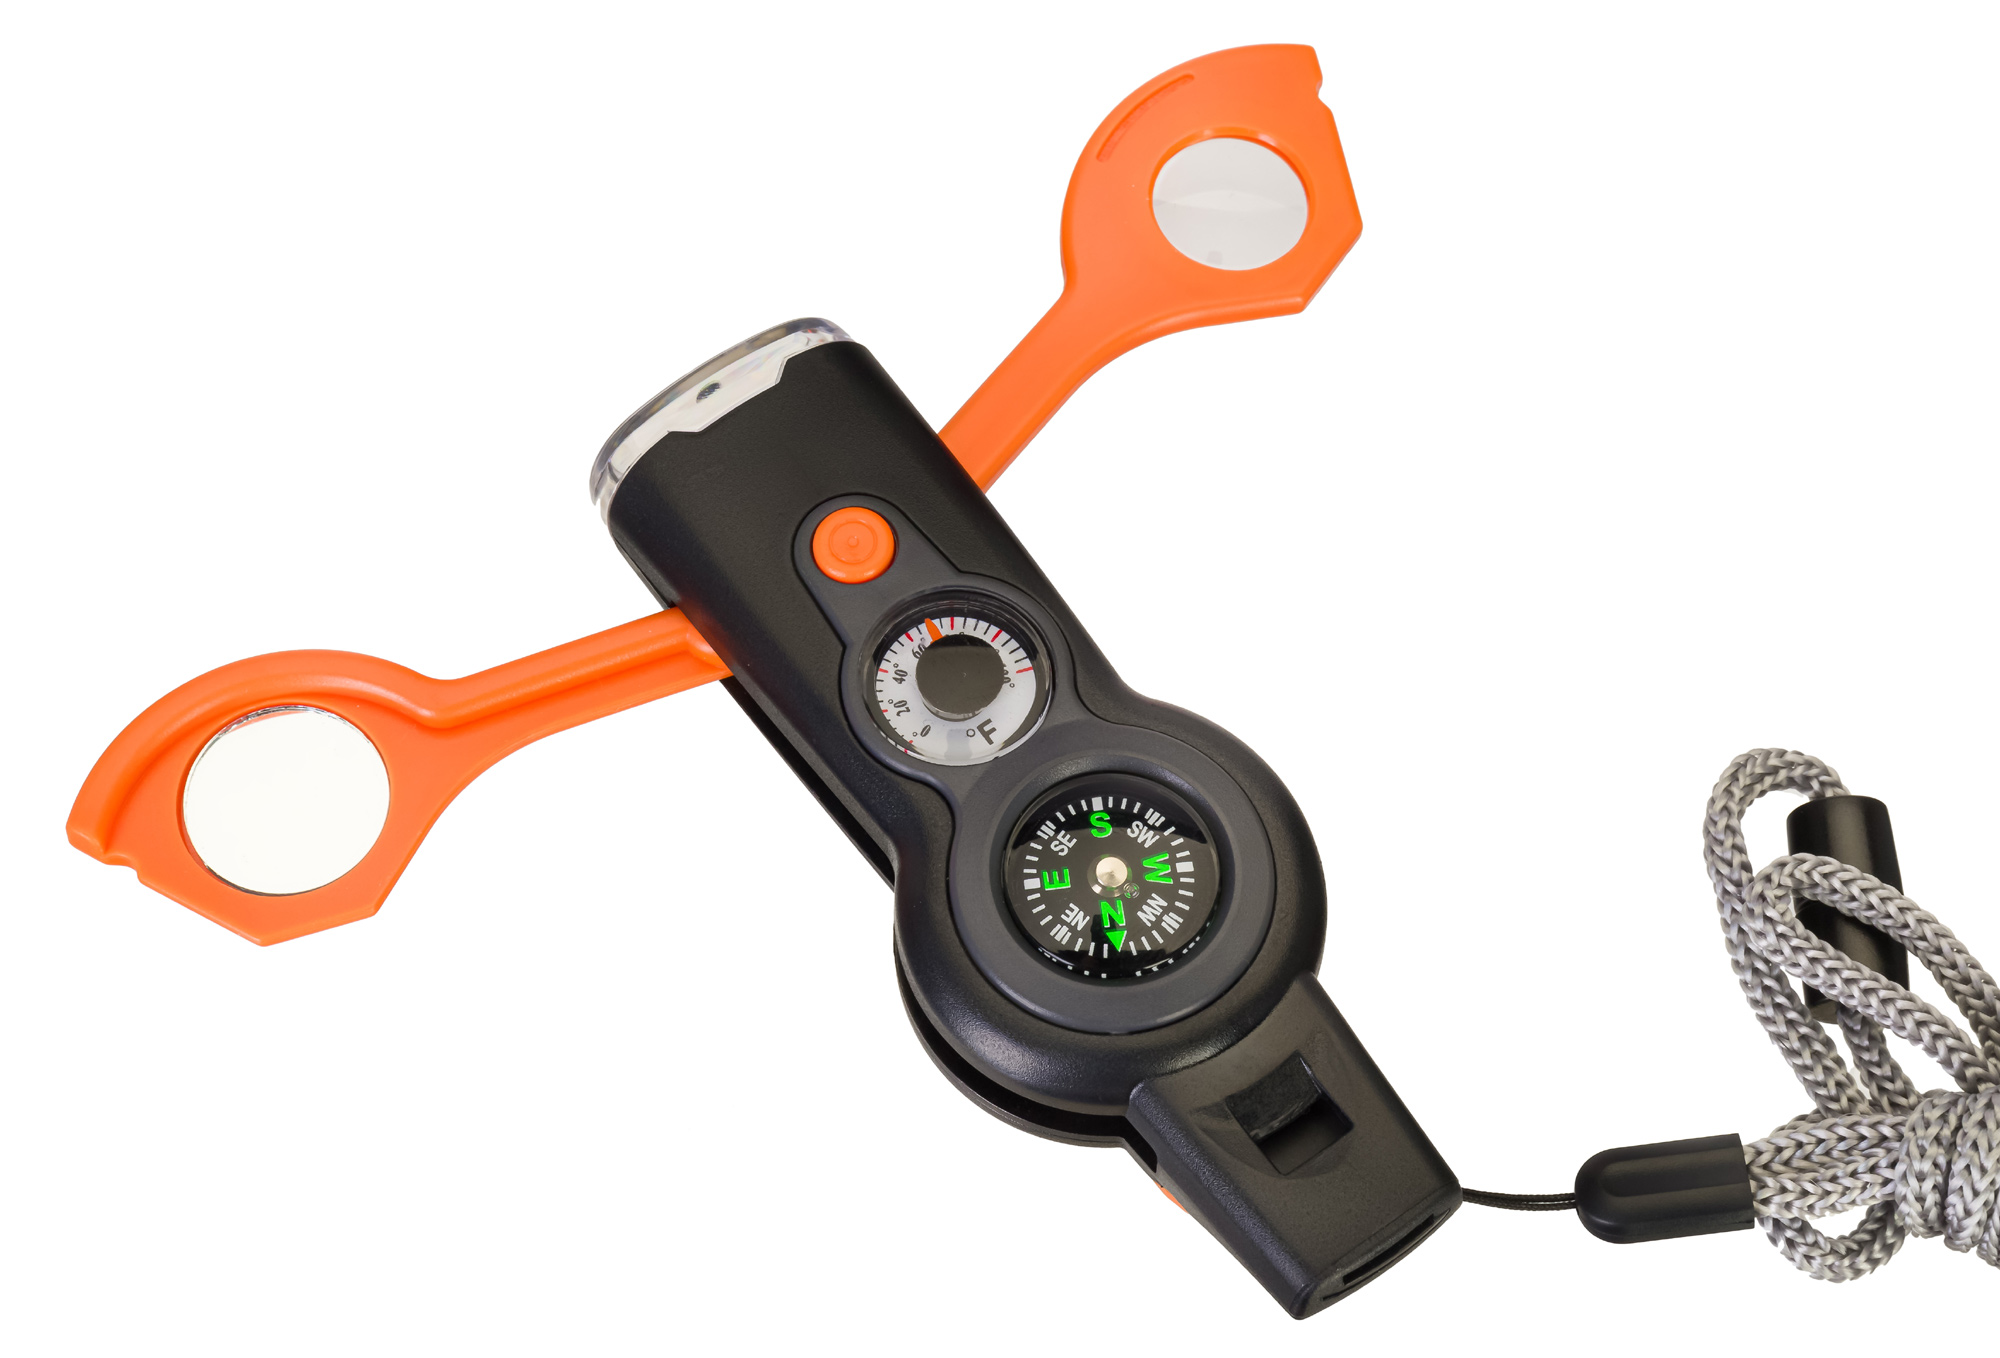 Kapesní multifunkční nástroj Discovery Basics EK5 Explorer Kit v sobě snoubí hned 6 vysoce praktických pomůcek – píšťalka, teploměr, kompas, zrcátko, lupa a svítilna.